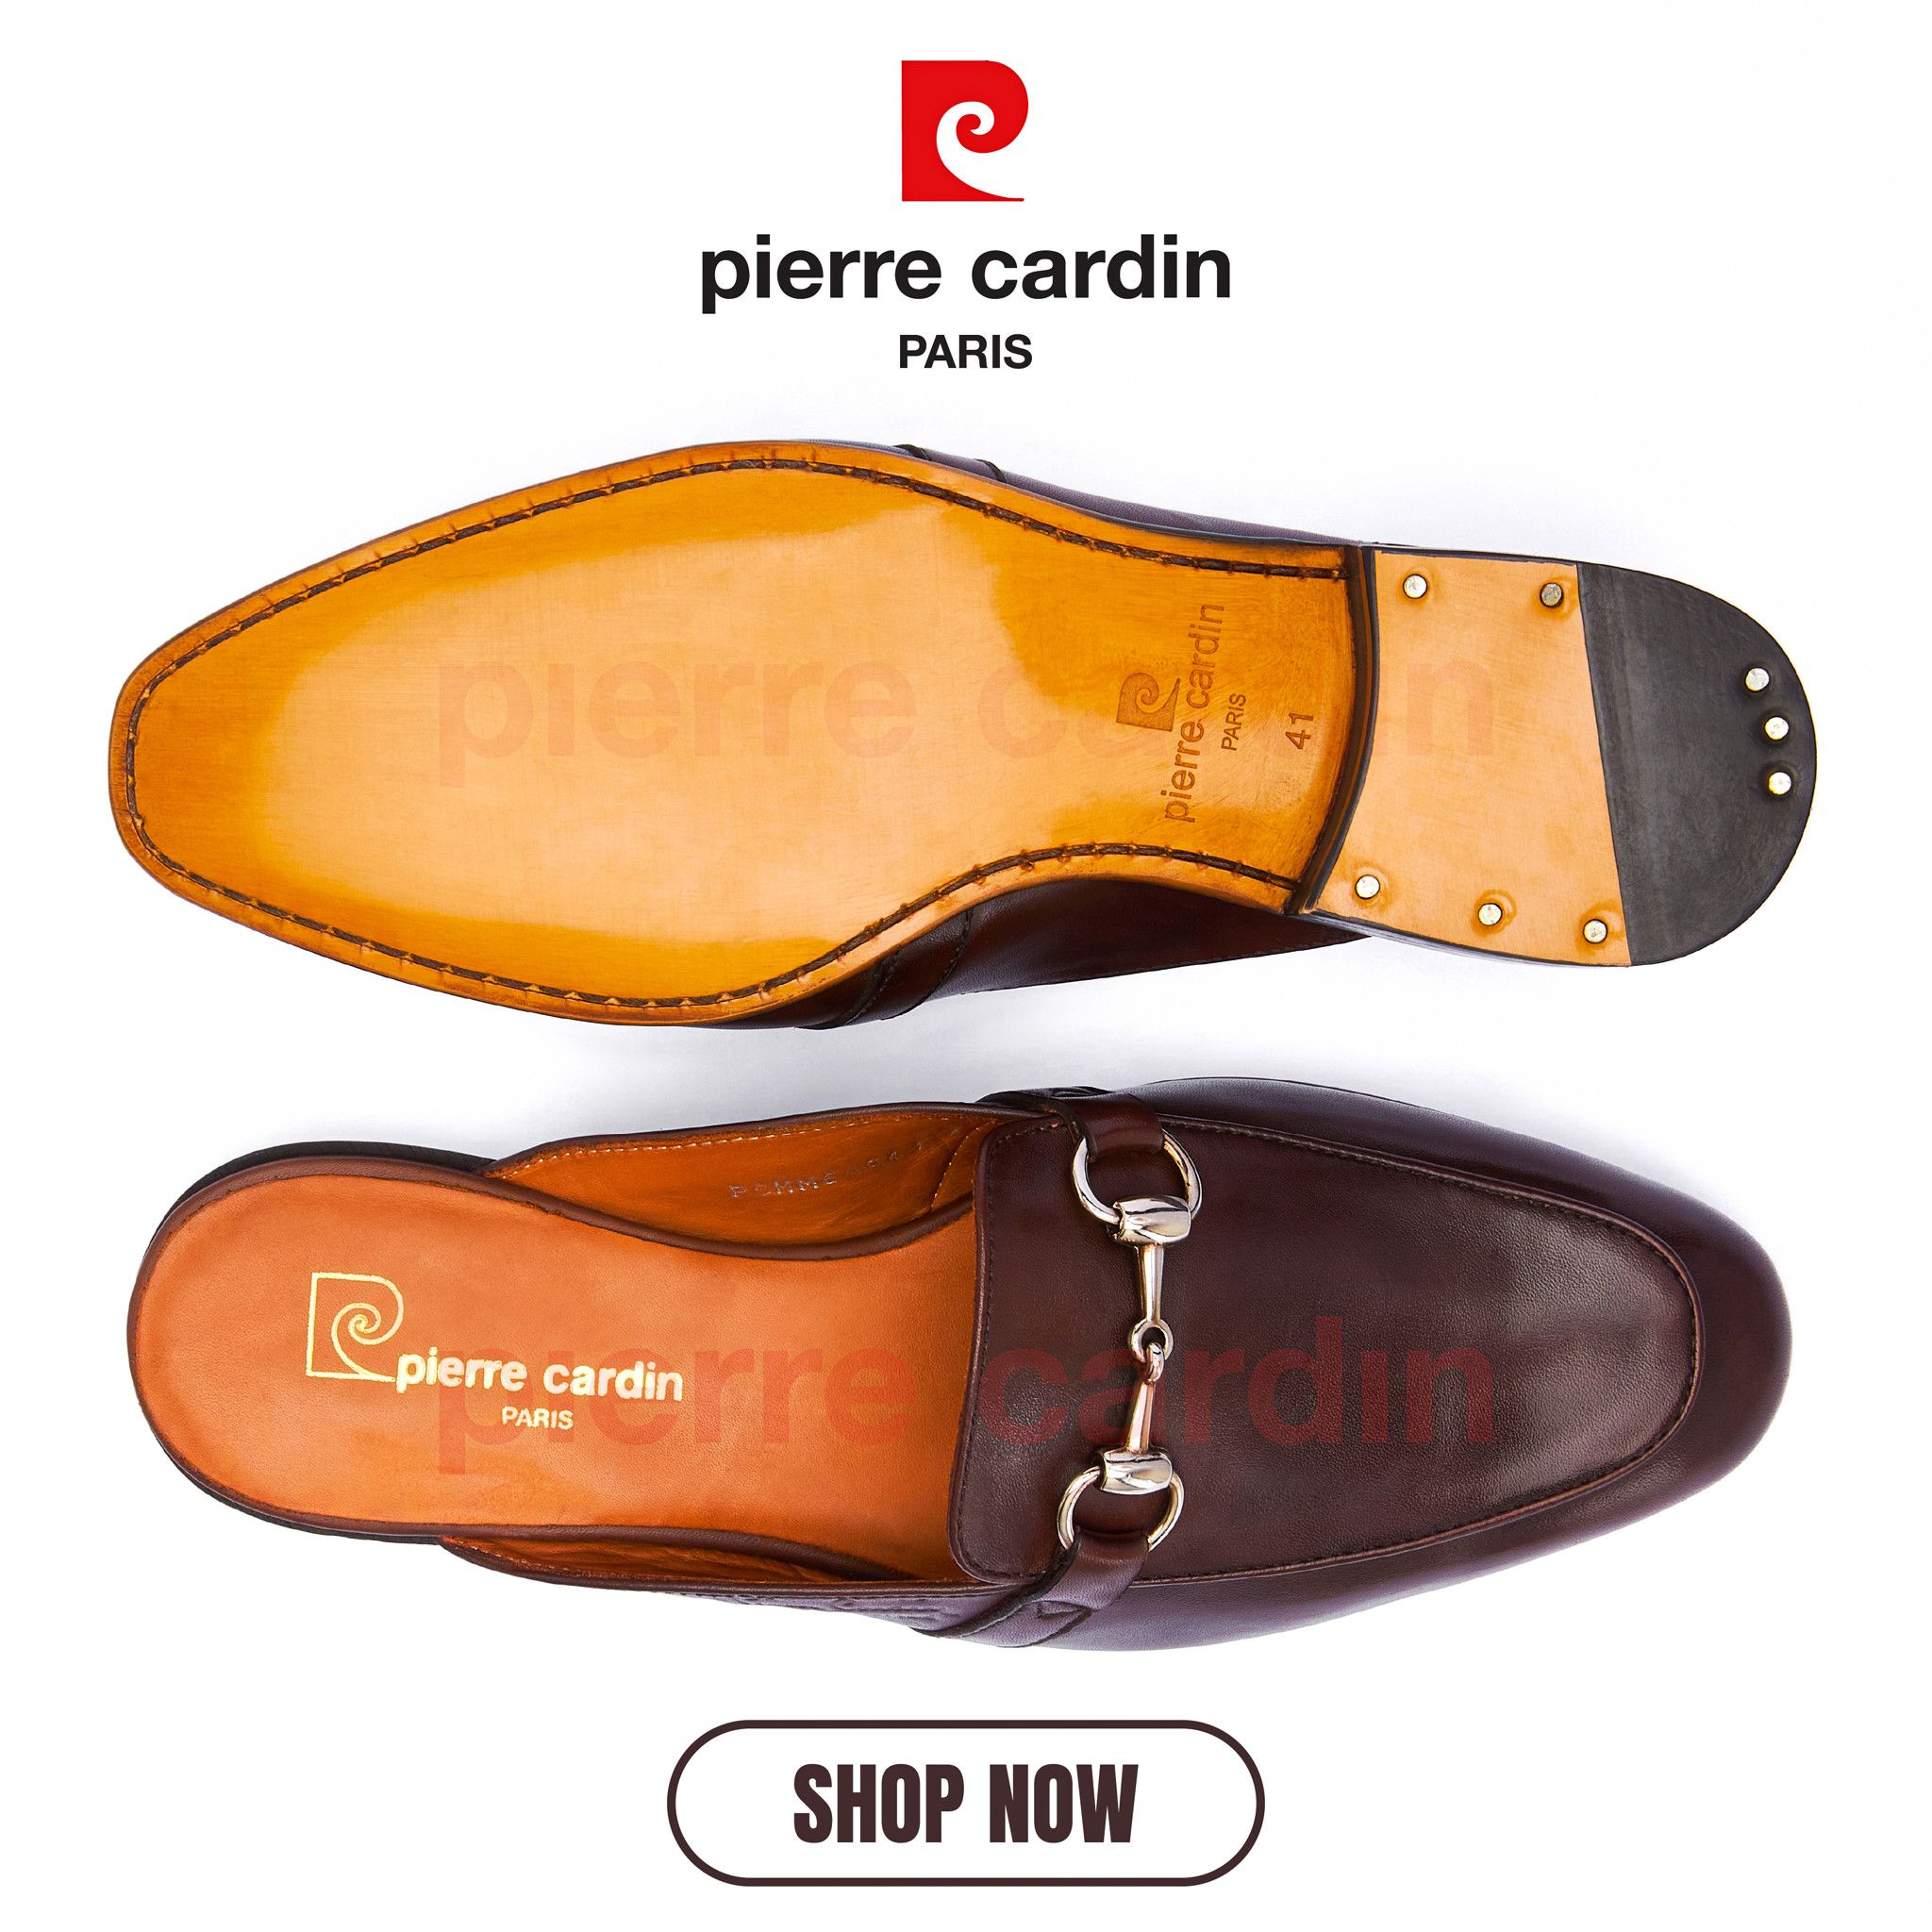 Pierre Cardin Paris Vietnam: Mule Shoes - PCMFWLF 501